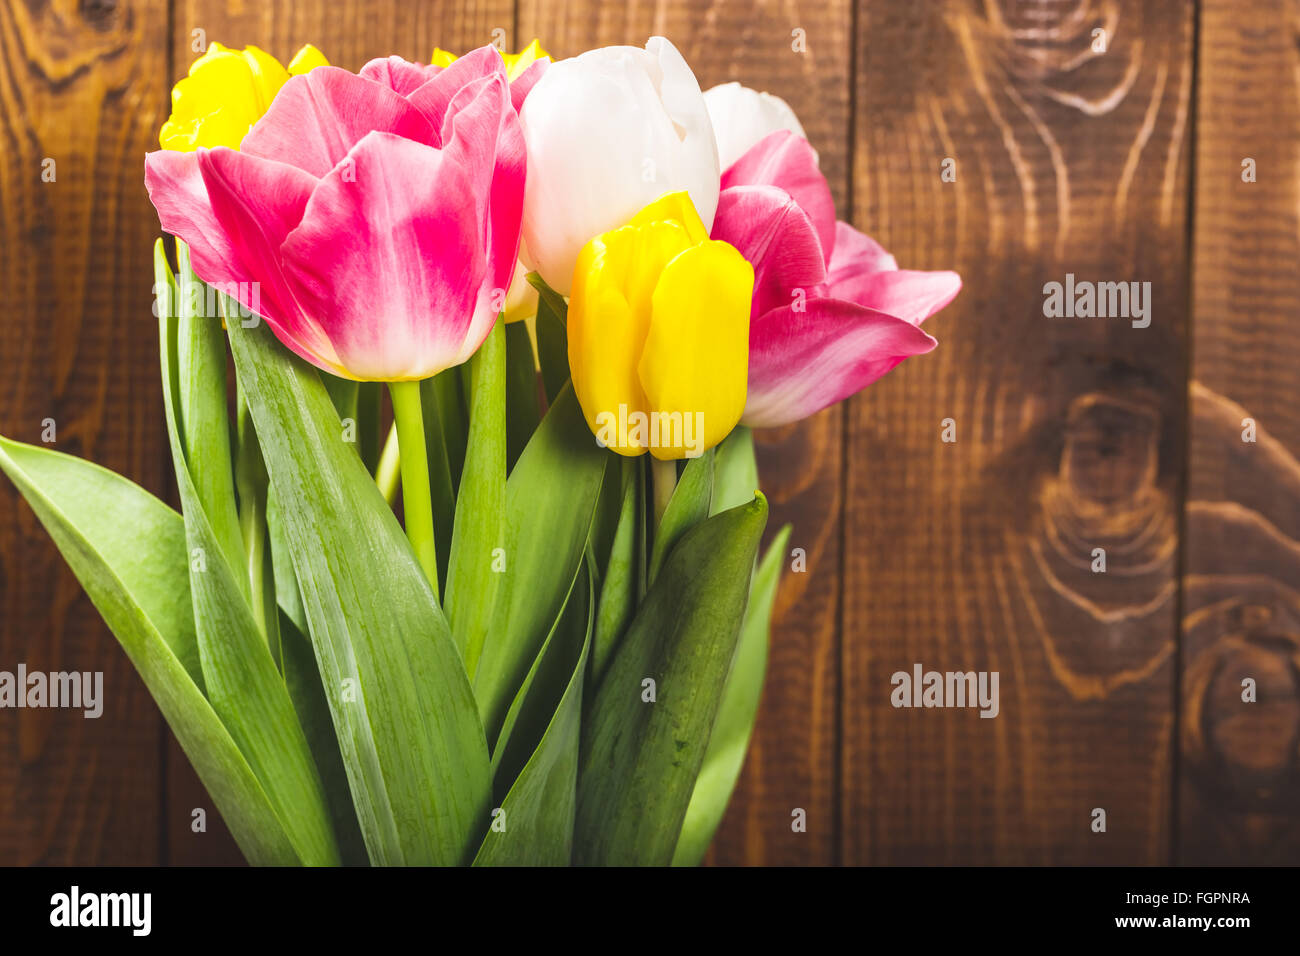 Blumenstrauß aus Tulpen vor Druckfeder Szene auf dem hölzernen Hintergrund. Ein Blumenstrauß für den 8. März, oder zum Valentinstag Stockfoto